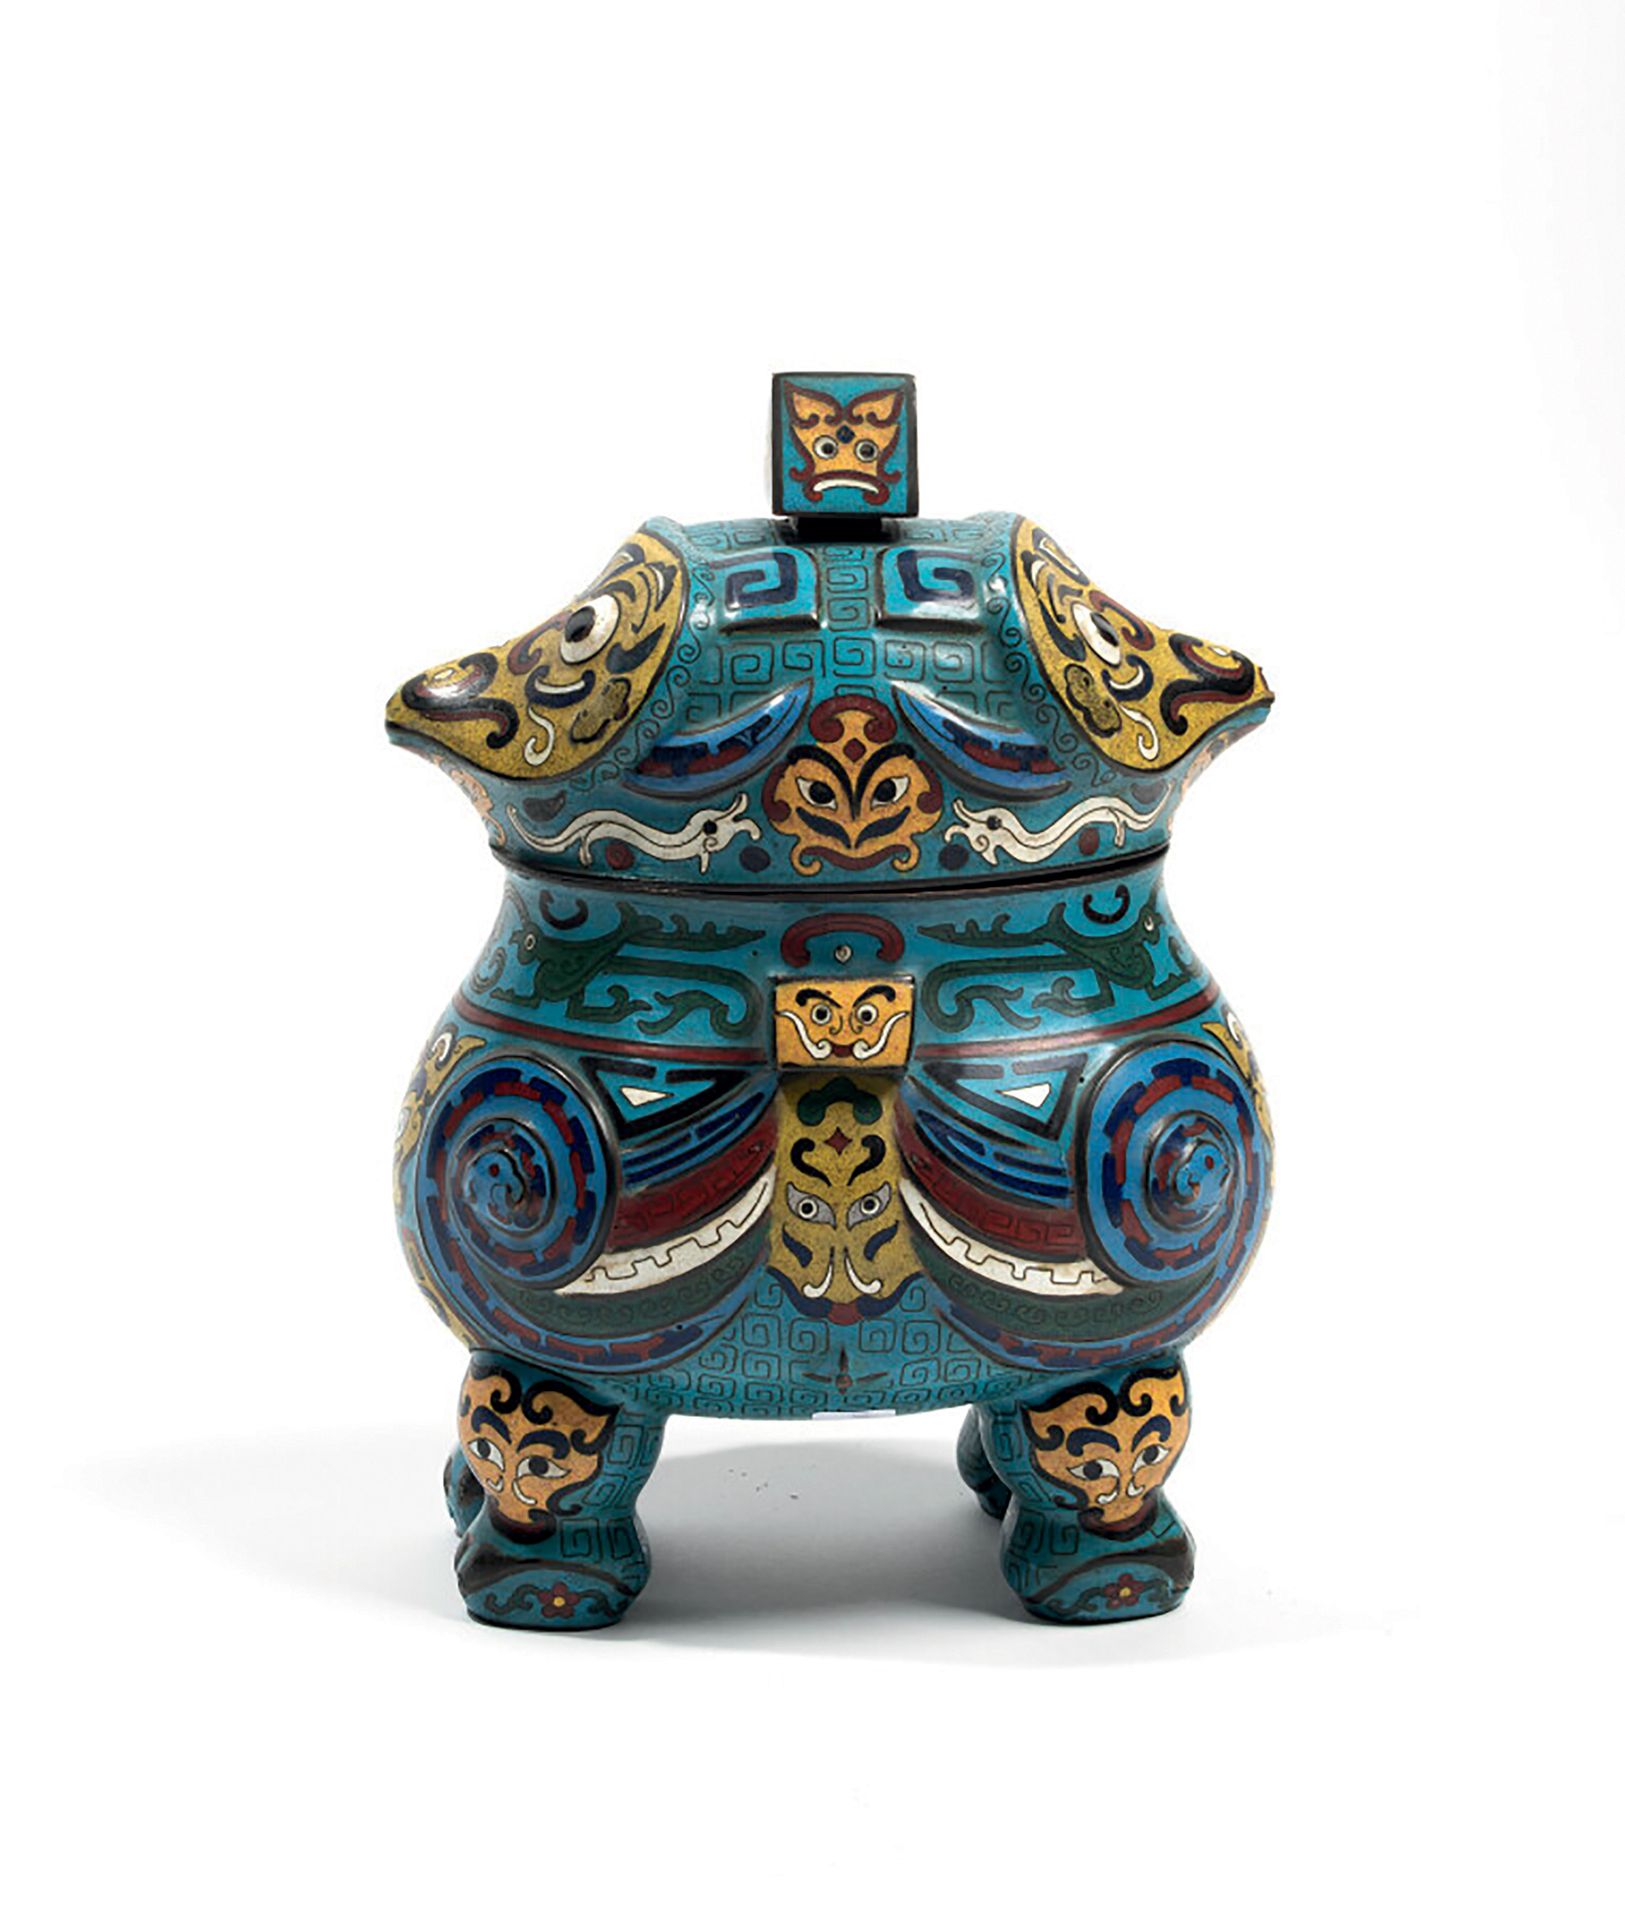 CHINE - XXème 
石蜡燃烧器/非典型的四脚有盖瓮，用掐丝珐琅彩绘成。其盖子上有饕餮面具。